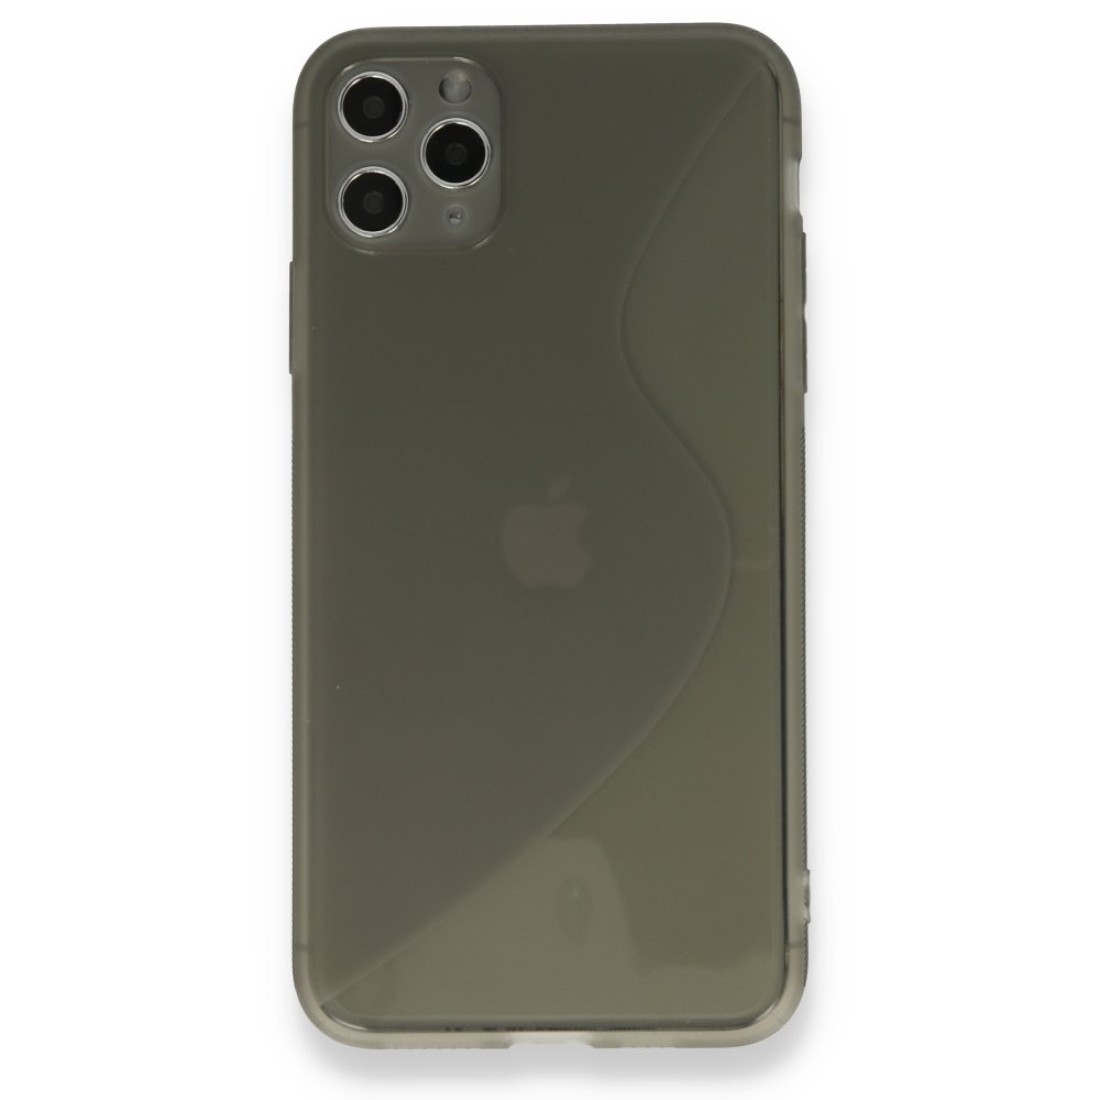 Apple iPhone 11 Pro Max Kılıf S Silikon - Gri